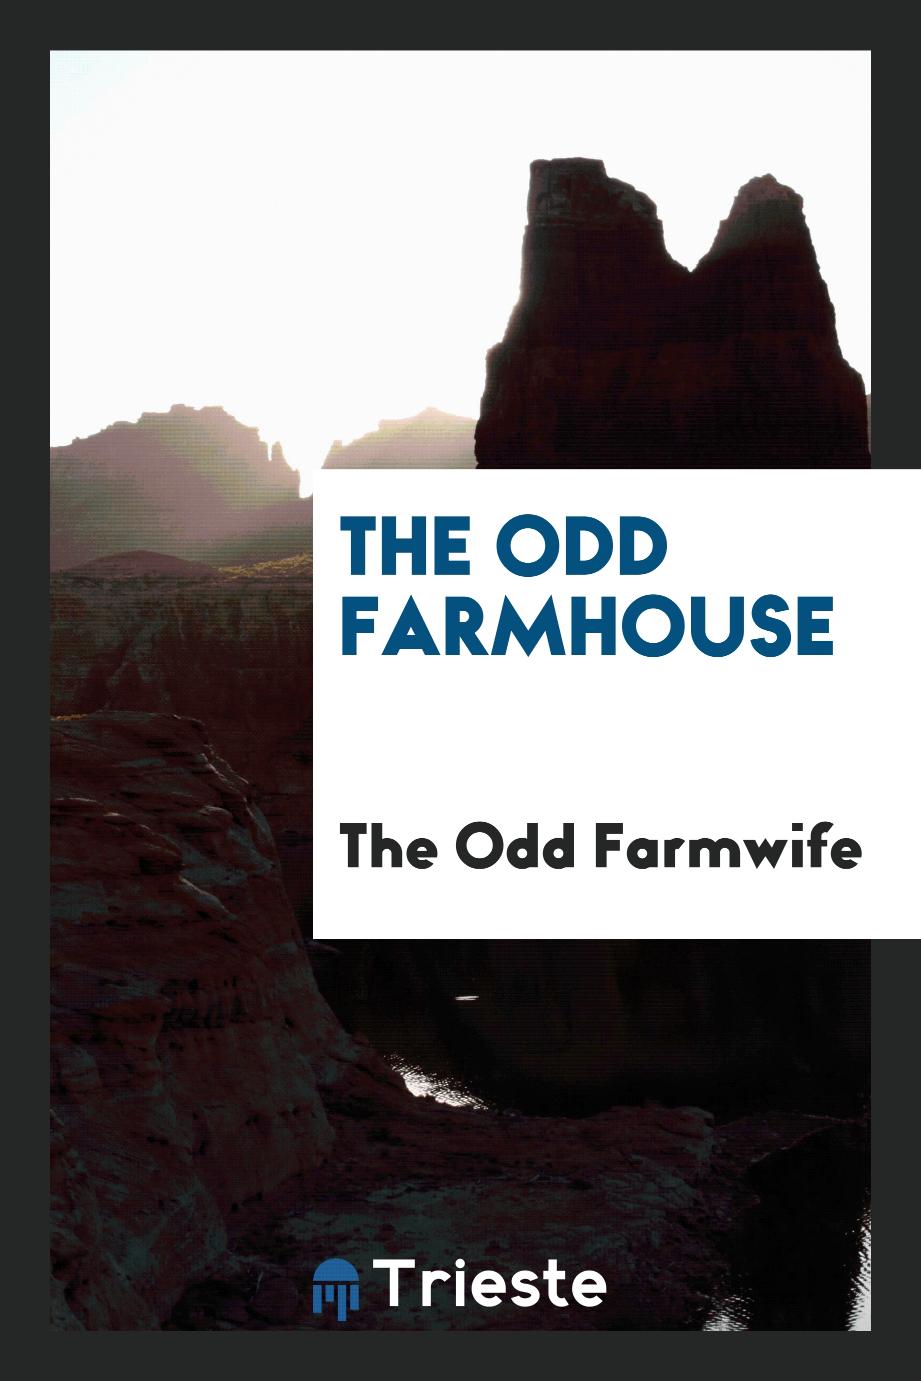 The odd farmhouse